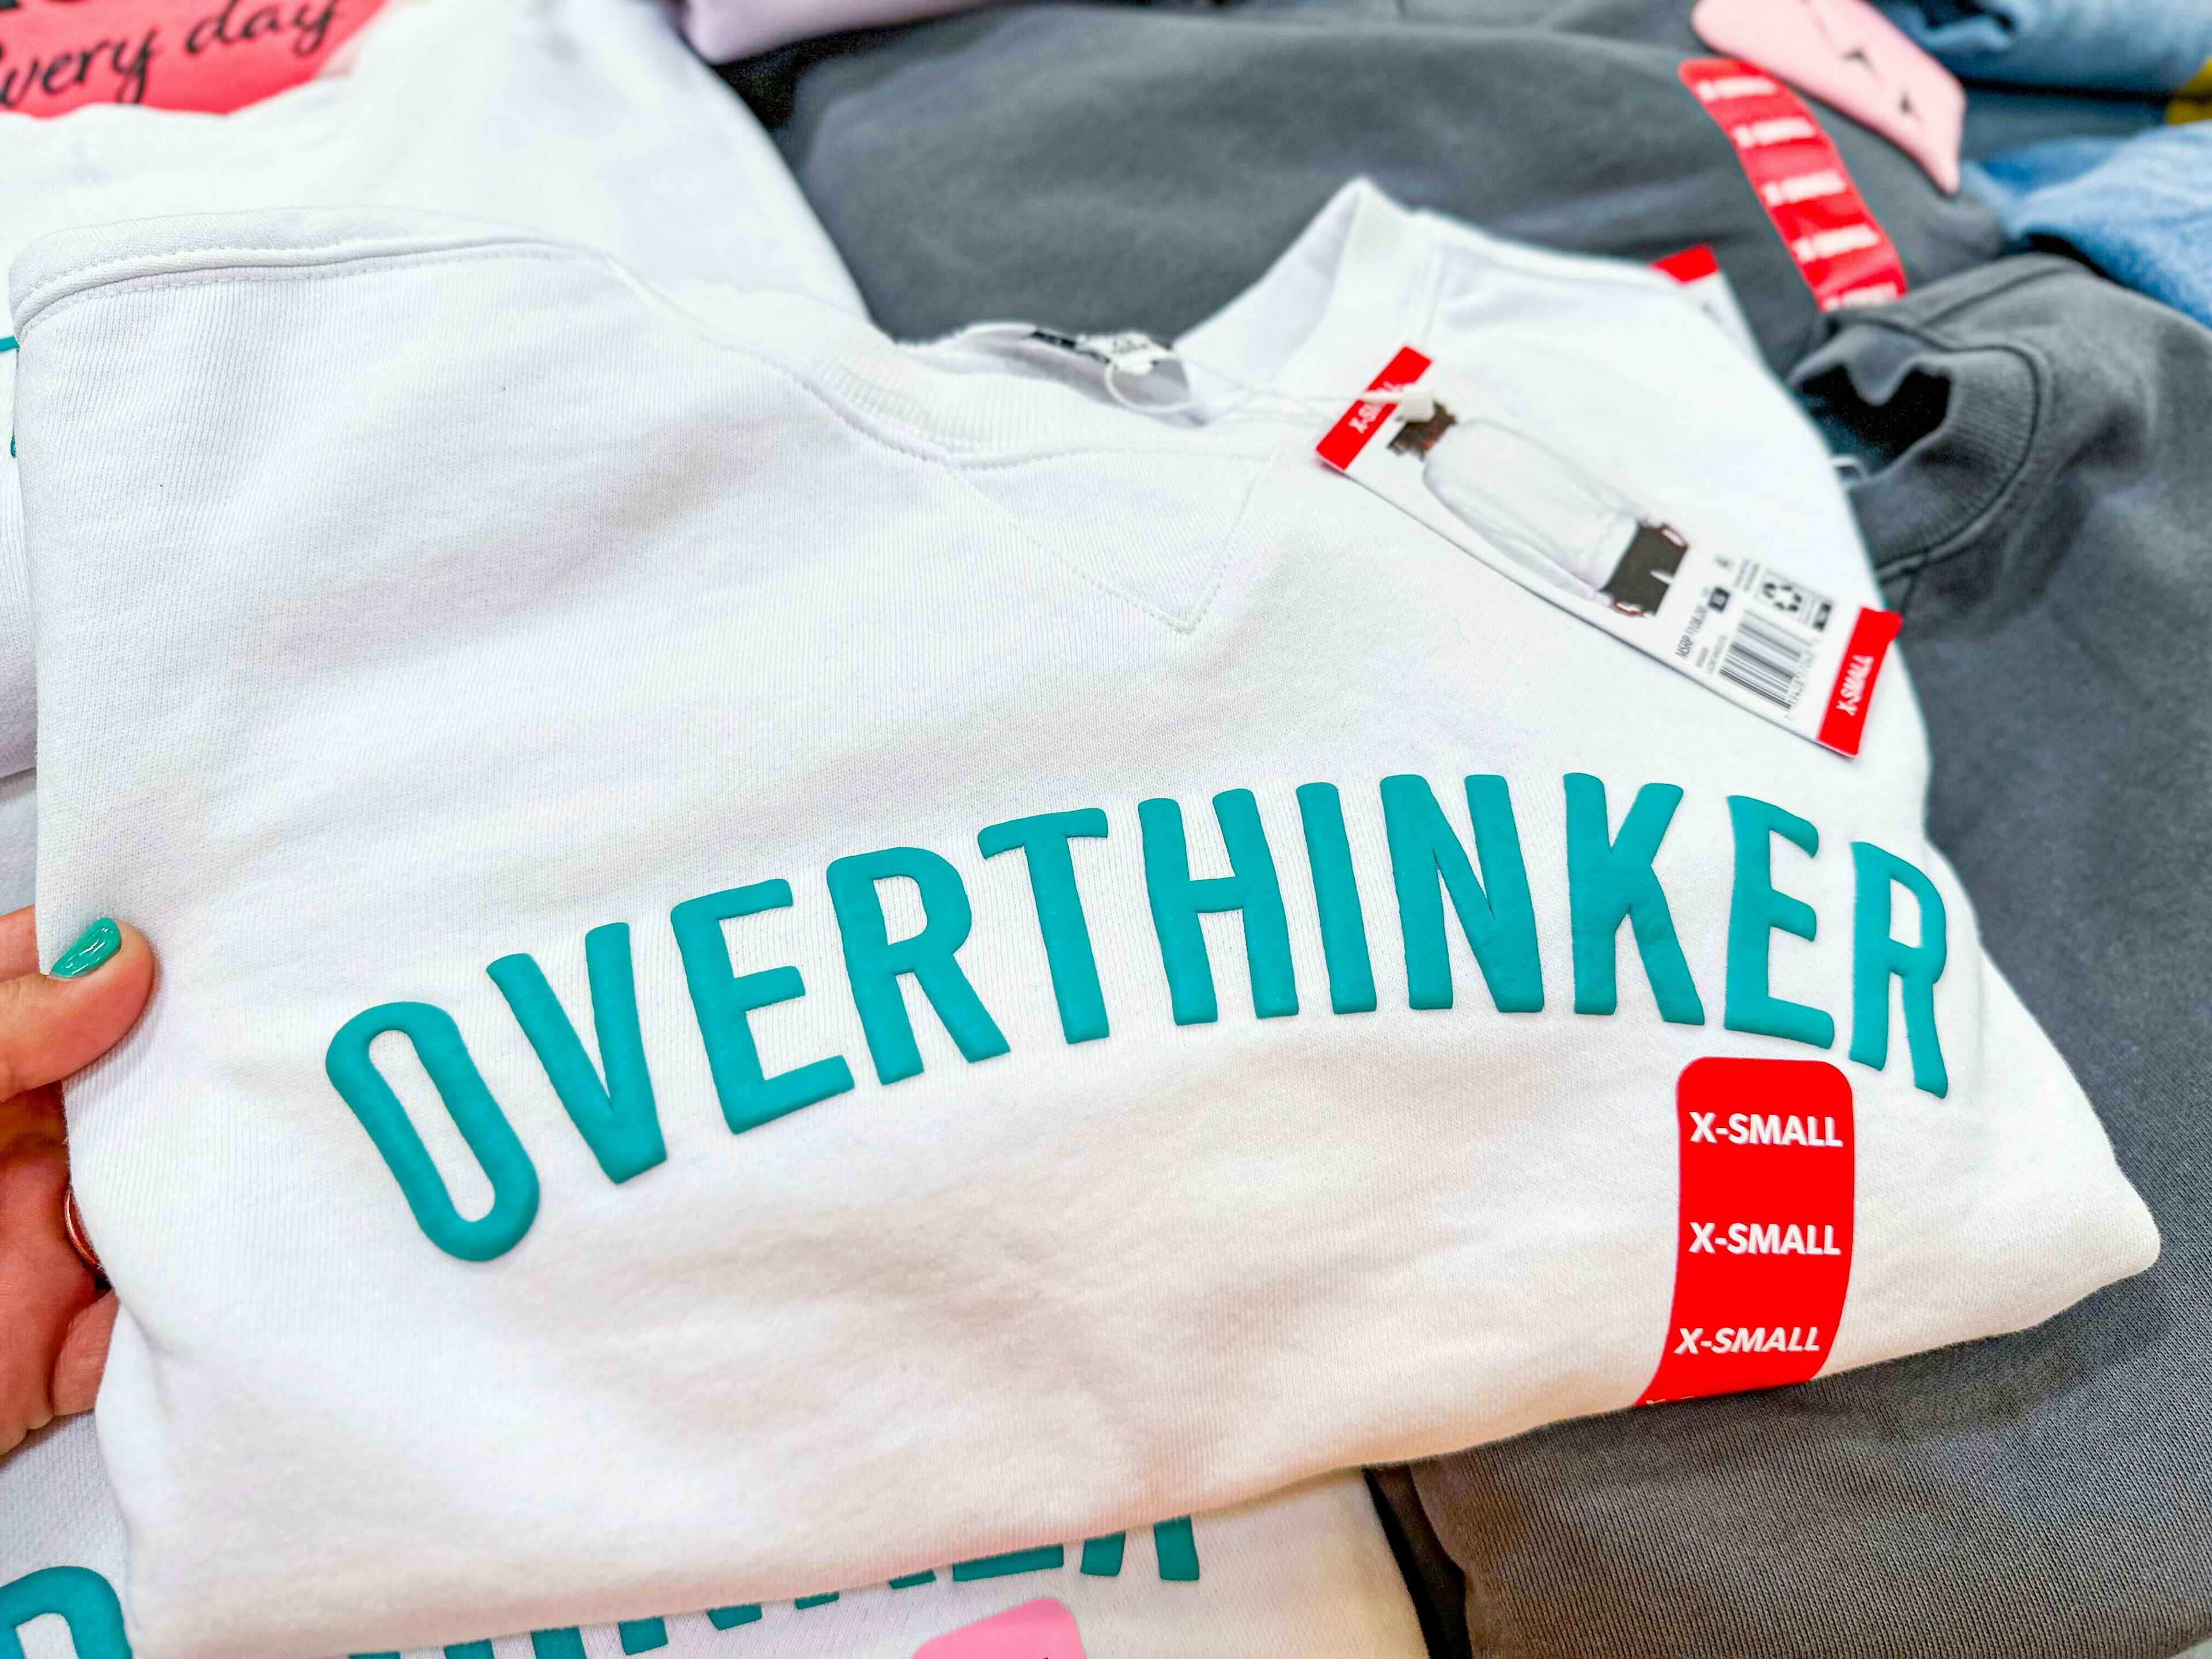 graphic sweatshirt that says "overthinker"